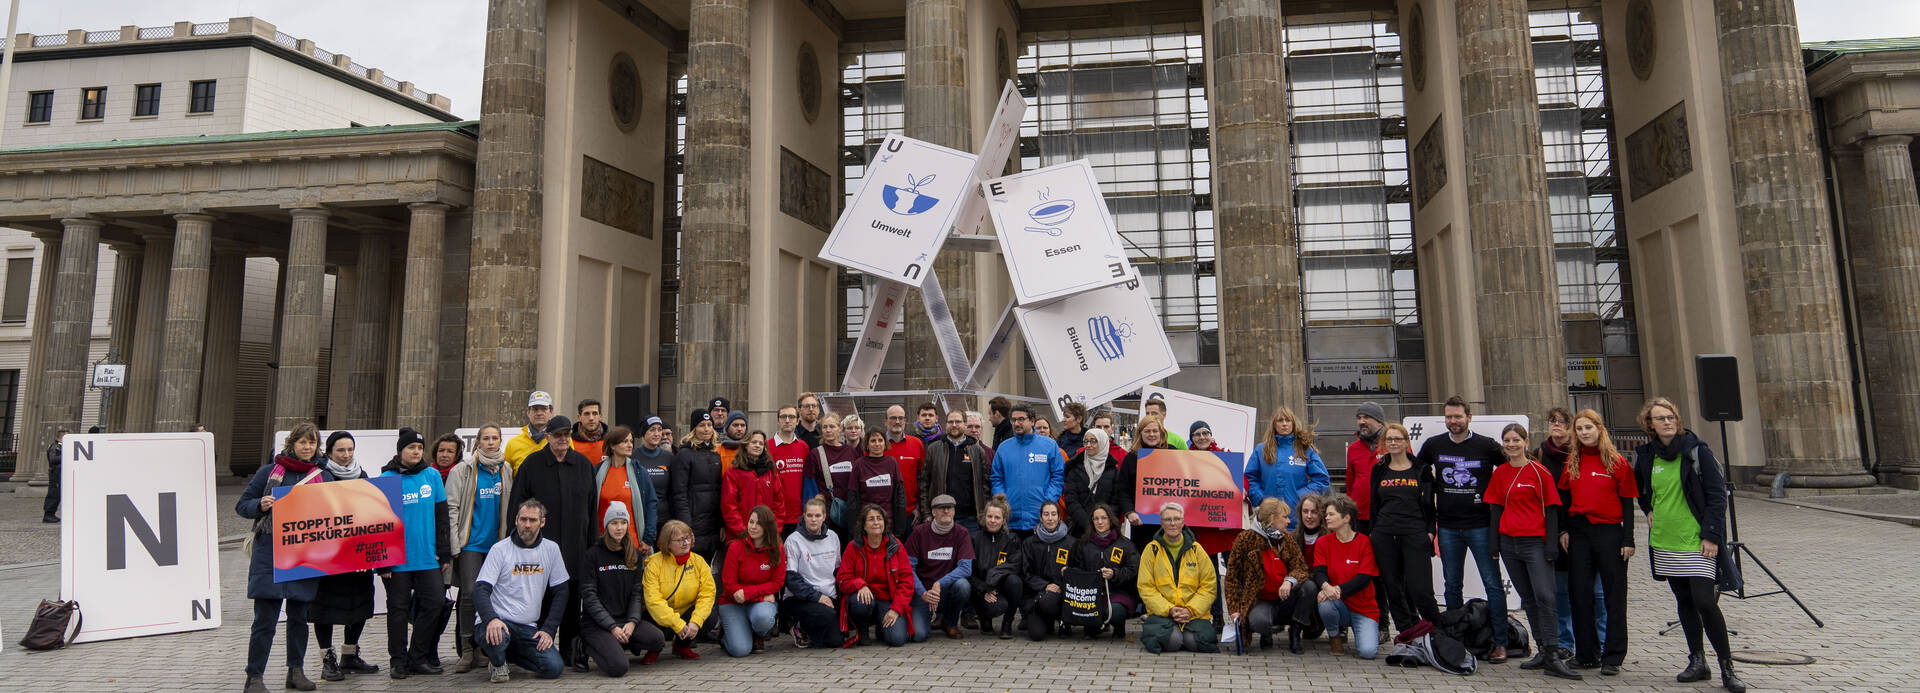 Mitglieder von Hilfsorganisationen bei der Protestaktion #Luftnachoben vor dem Brandenburger Tor in Berlin, im Hintergrund ein zusammenfallendes Kartenhaus.